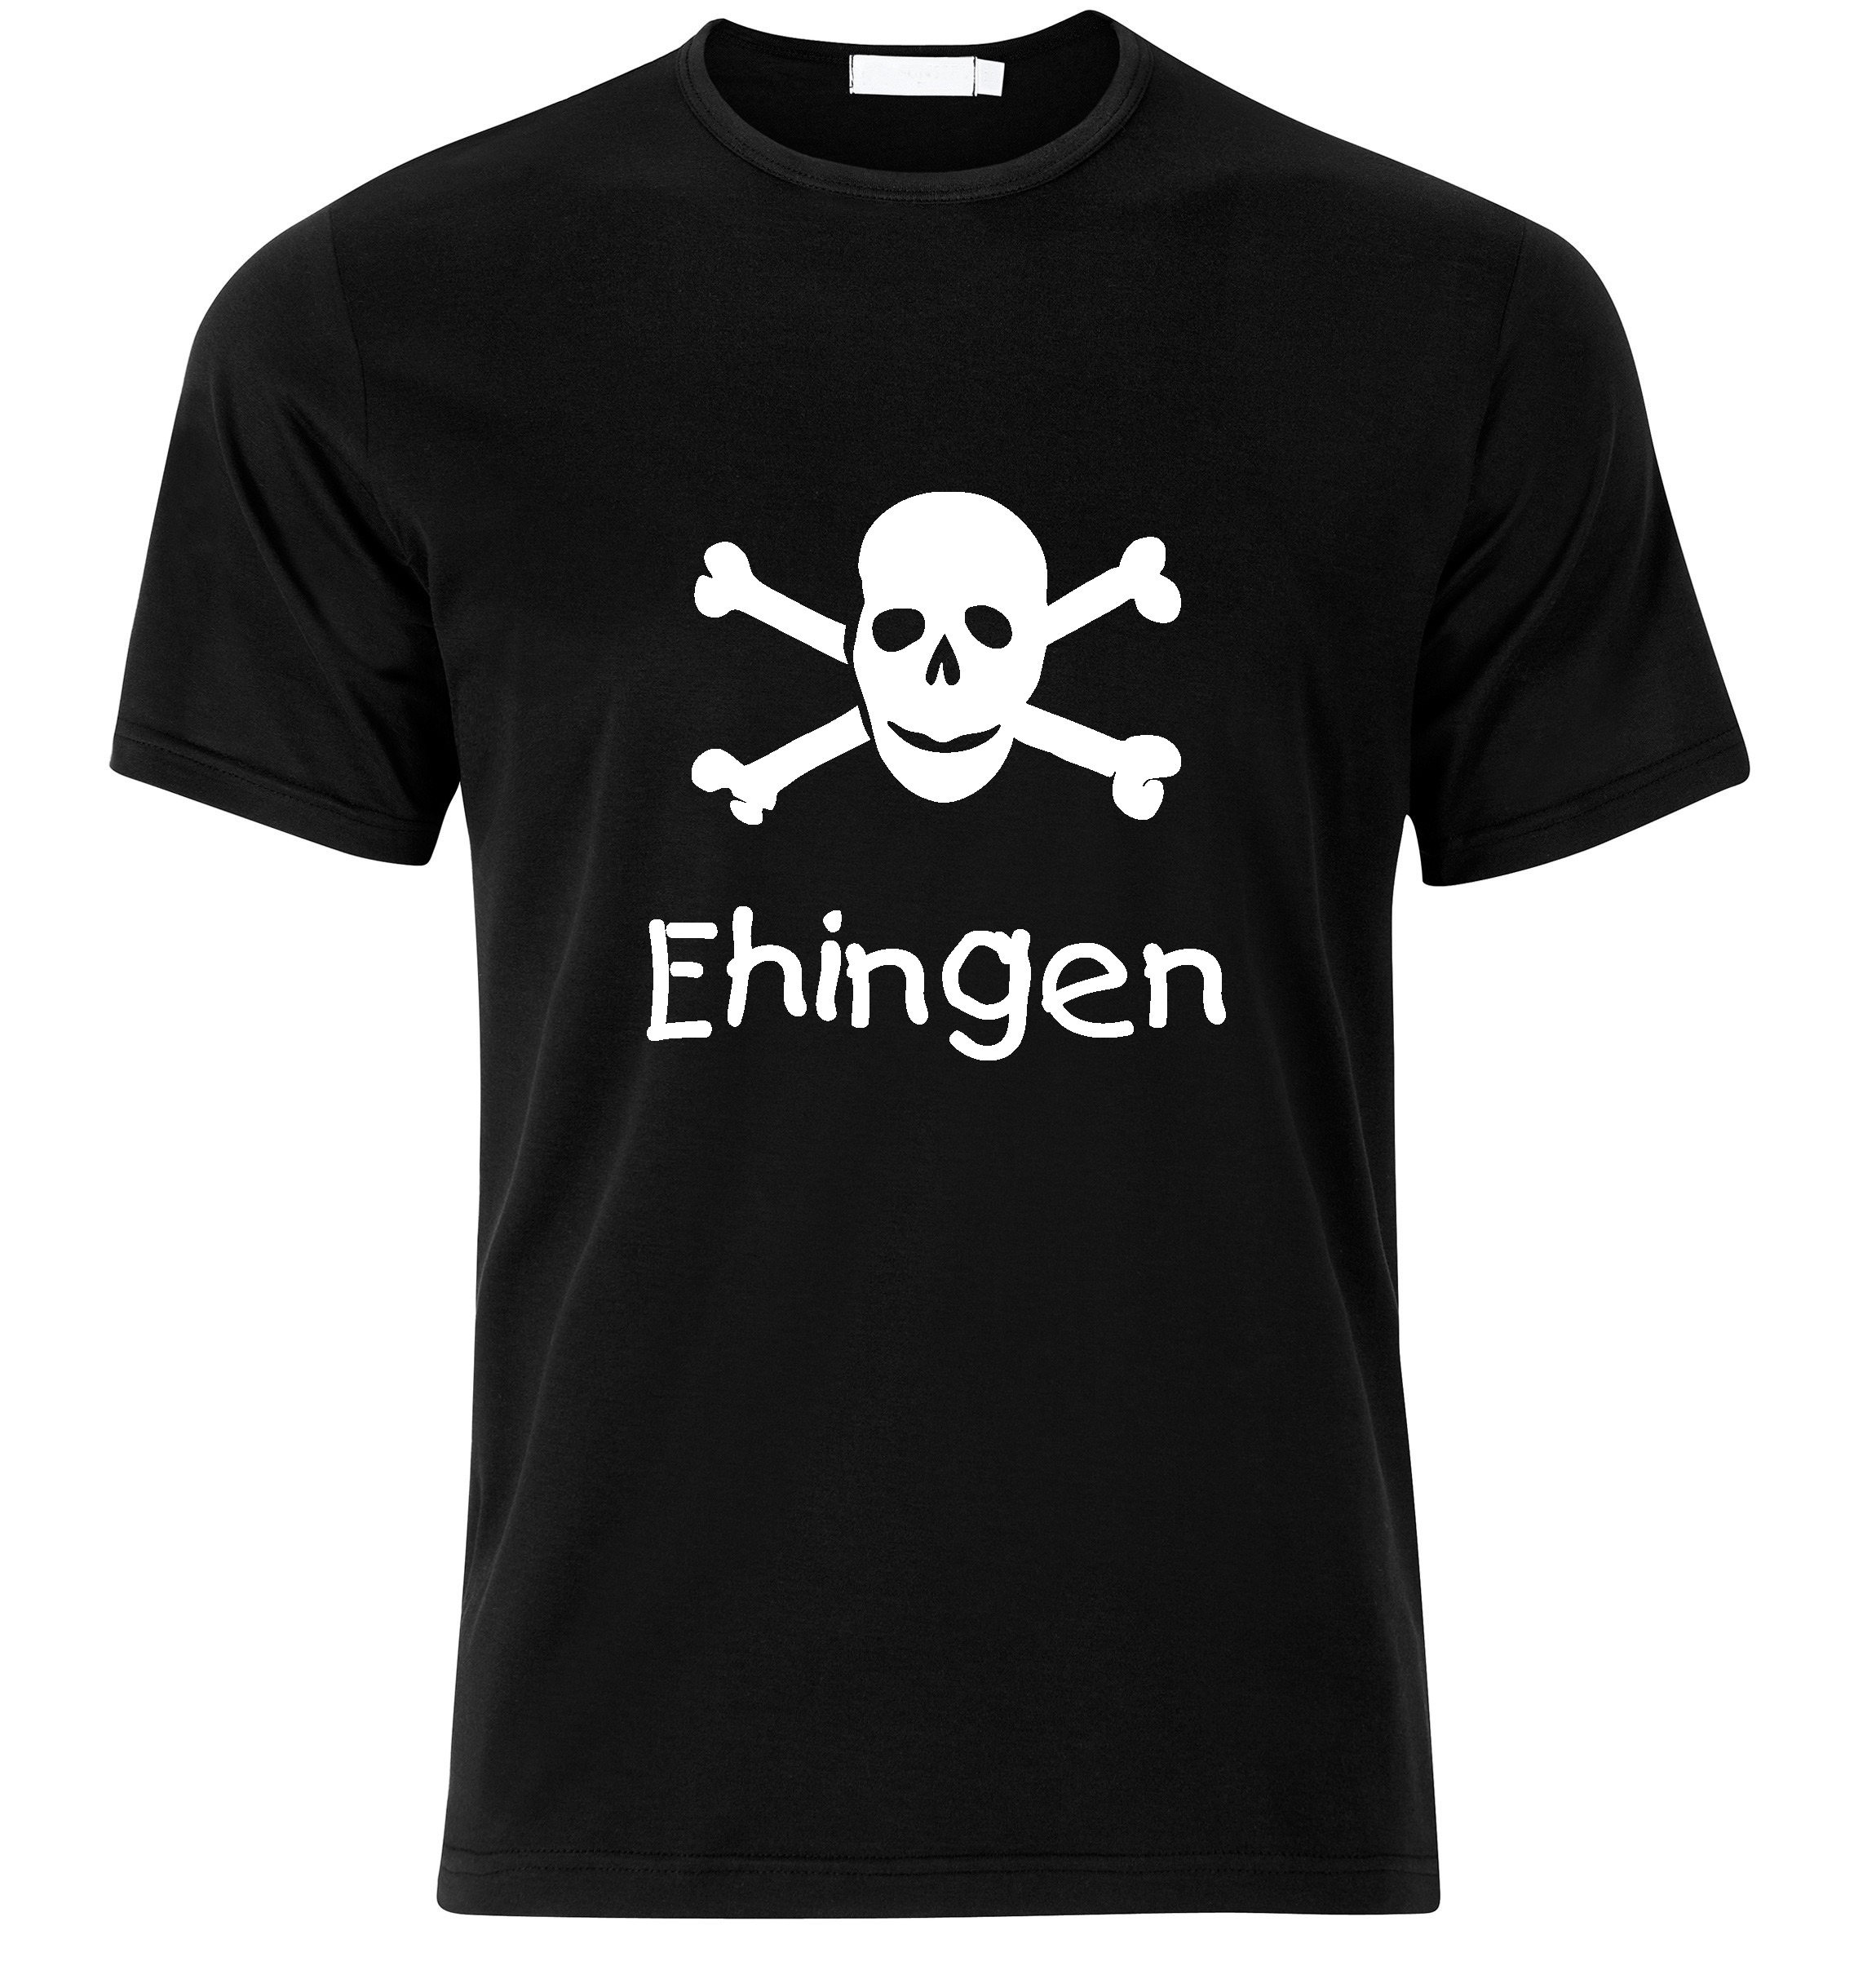 T-Shirt Ehingen Jolly Roger, Totenkopf